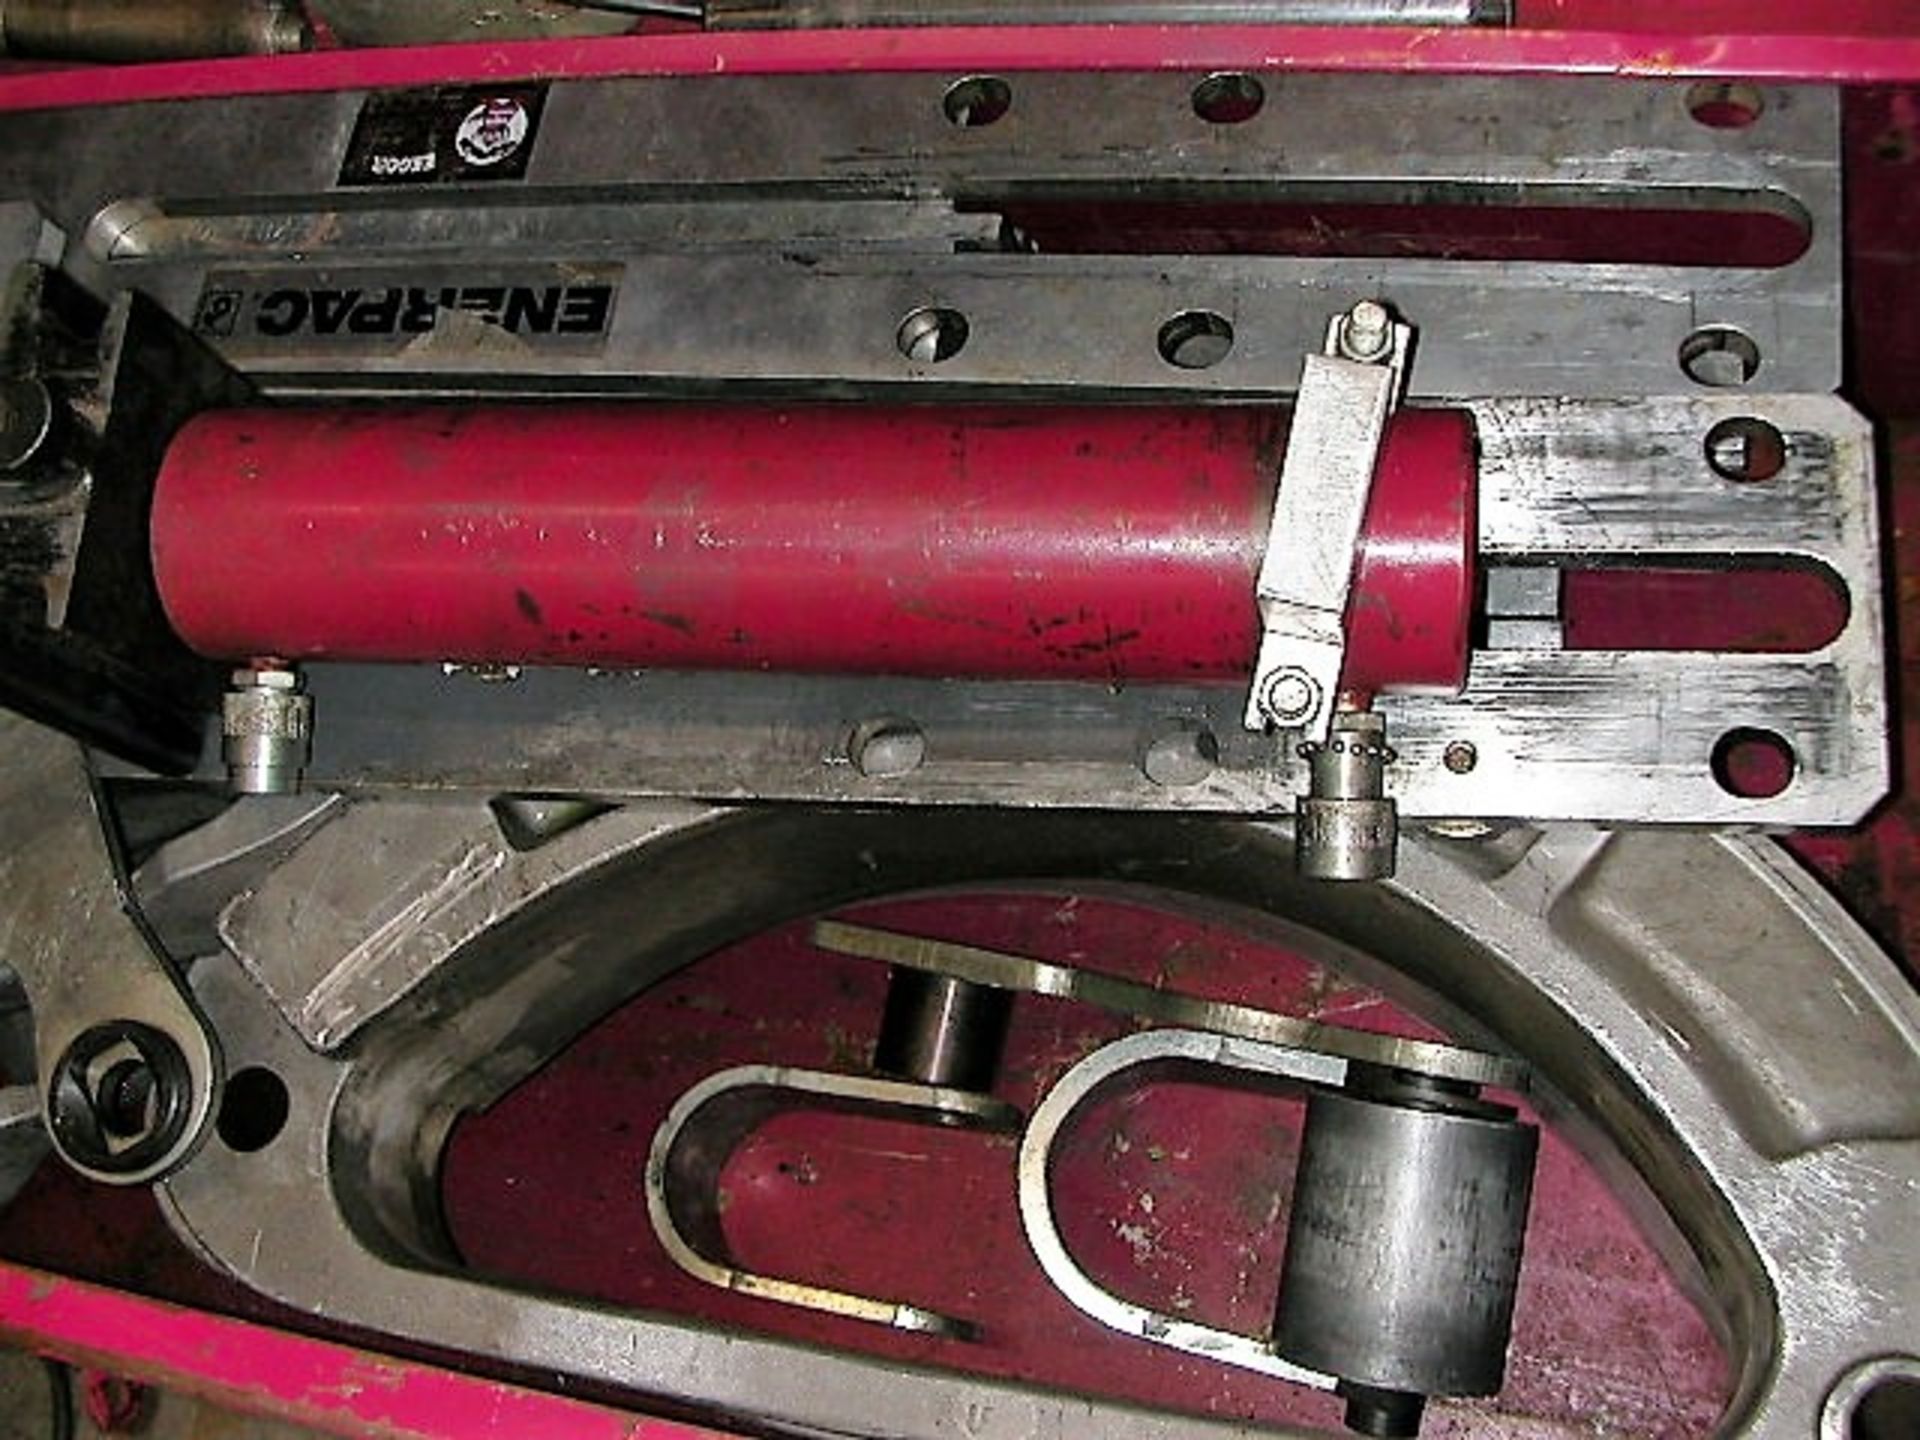 Enerpac EEGOR - Multi-Purpose Hydraulic Bender & EnerPac Pump in Toolguard CM-16 Job Box - Image 2 of 6